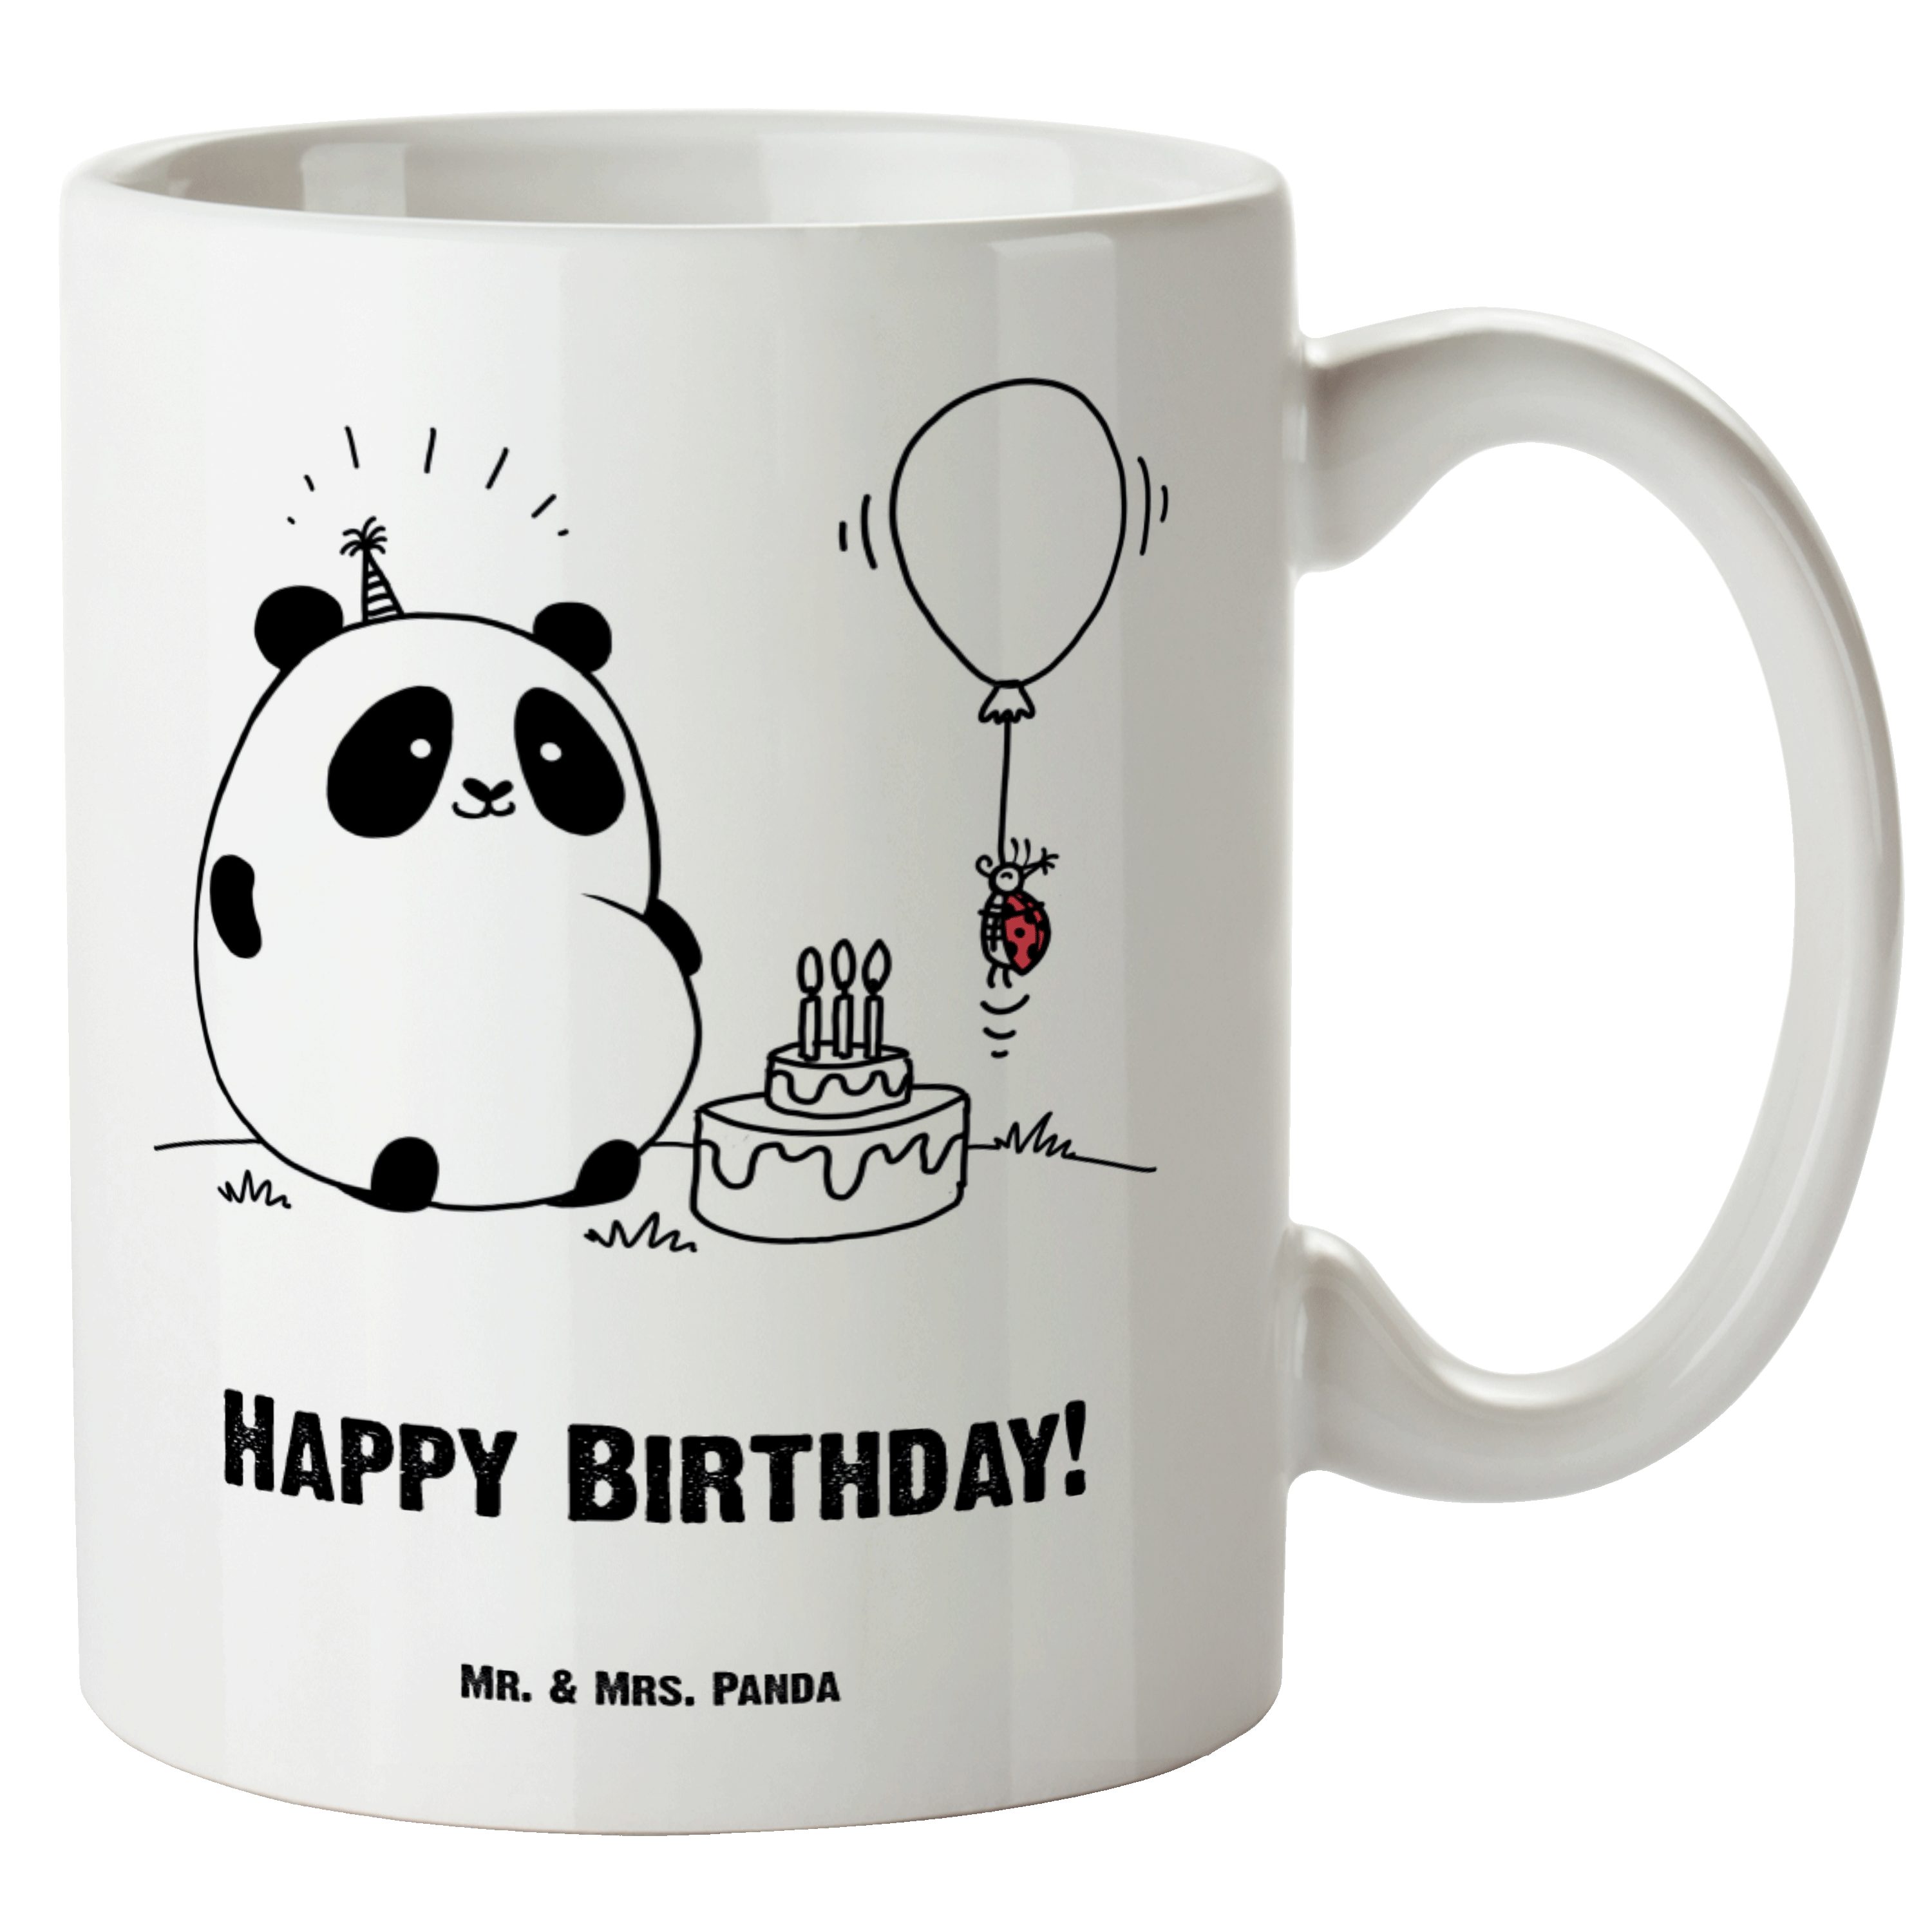 Mr. & Mrs. Panda Tasse Easy & Peasy Happy Birthday - Weiß - Geschenk, spülmaschinenfest, Gro, XL Tasse Keramik